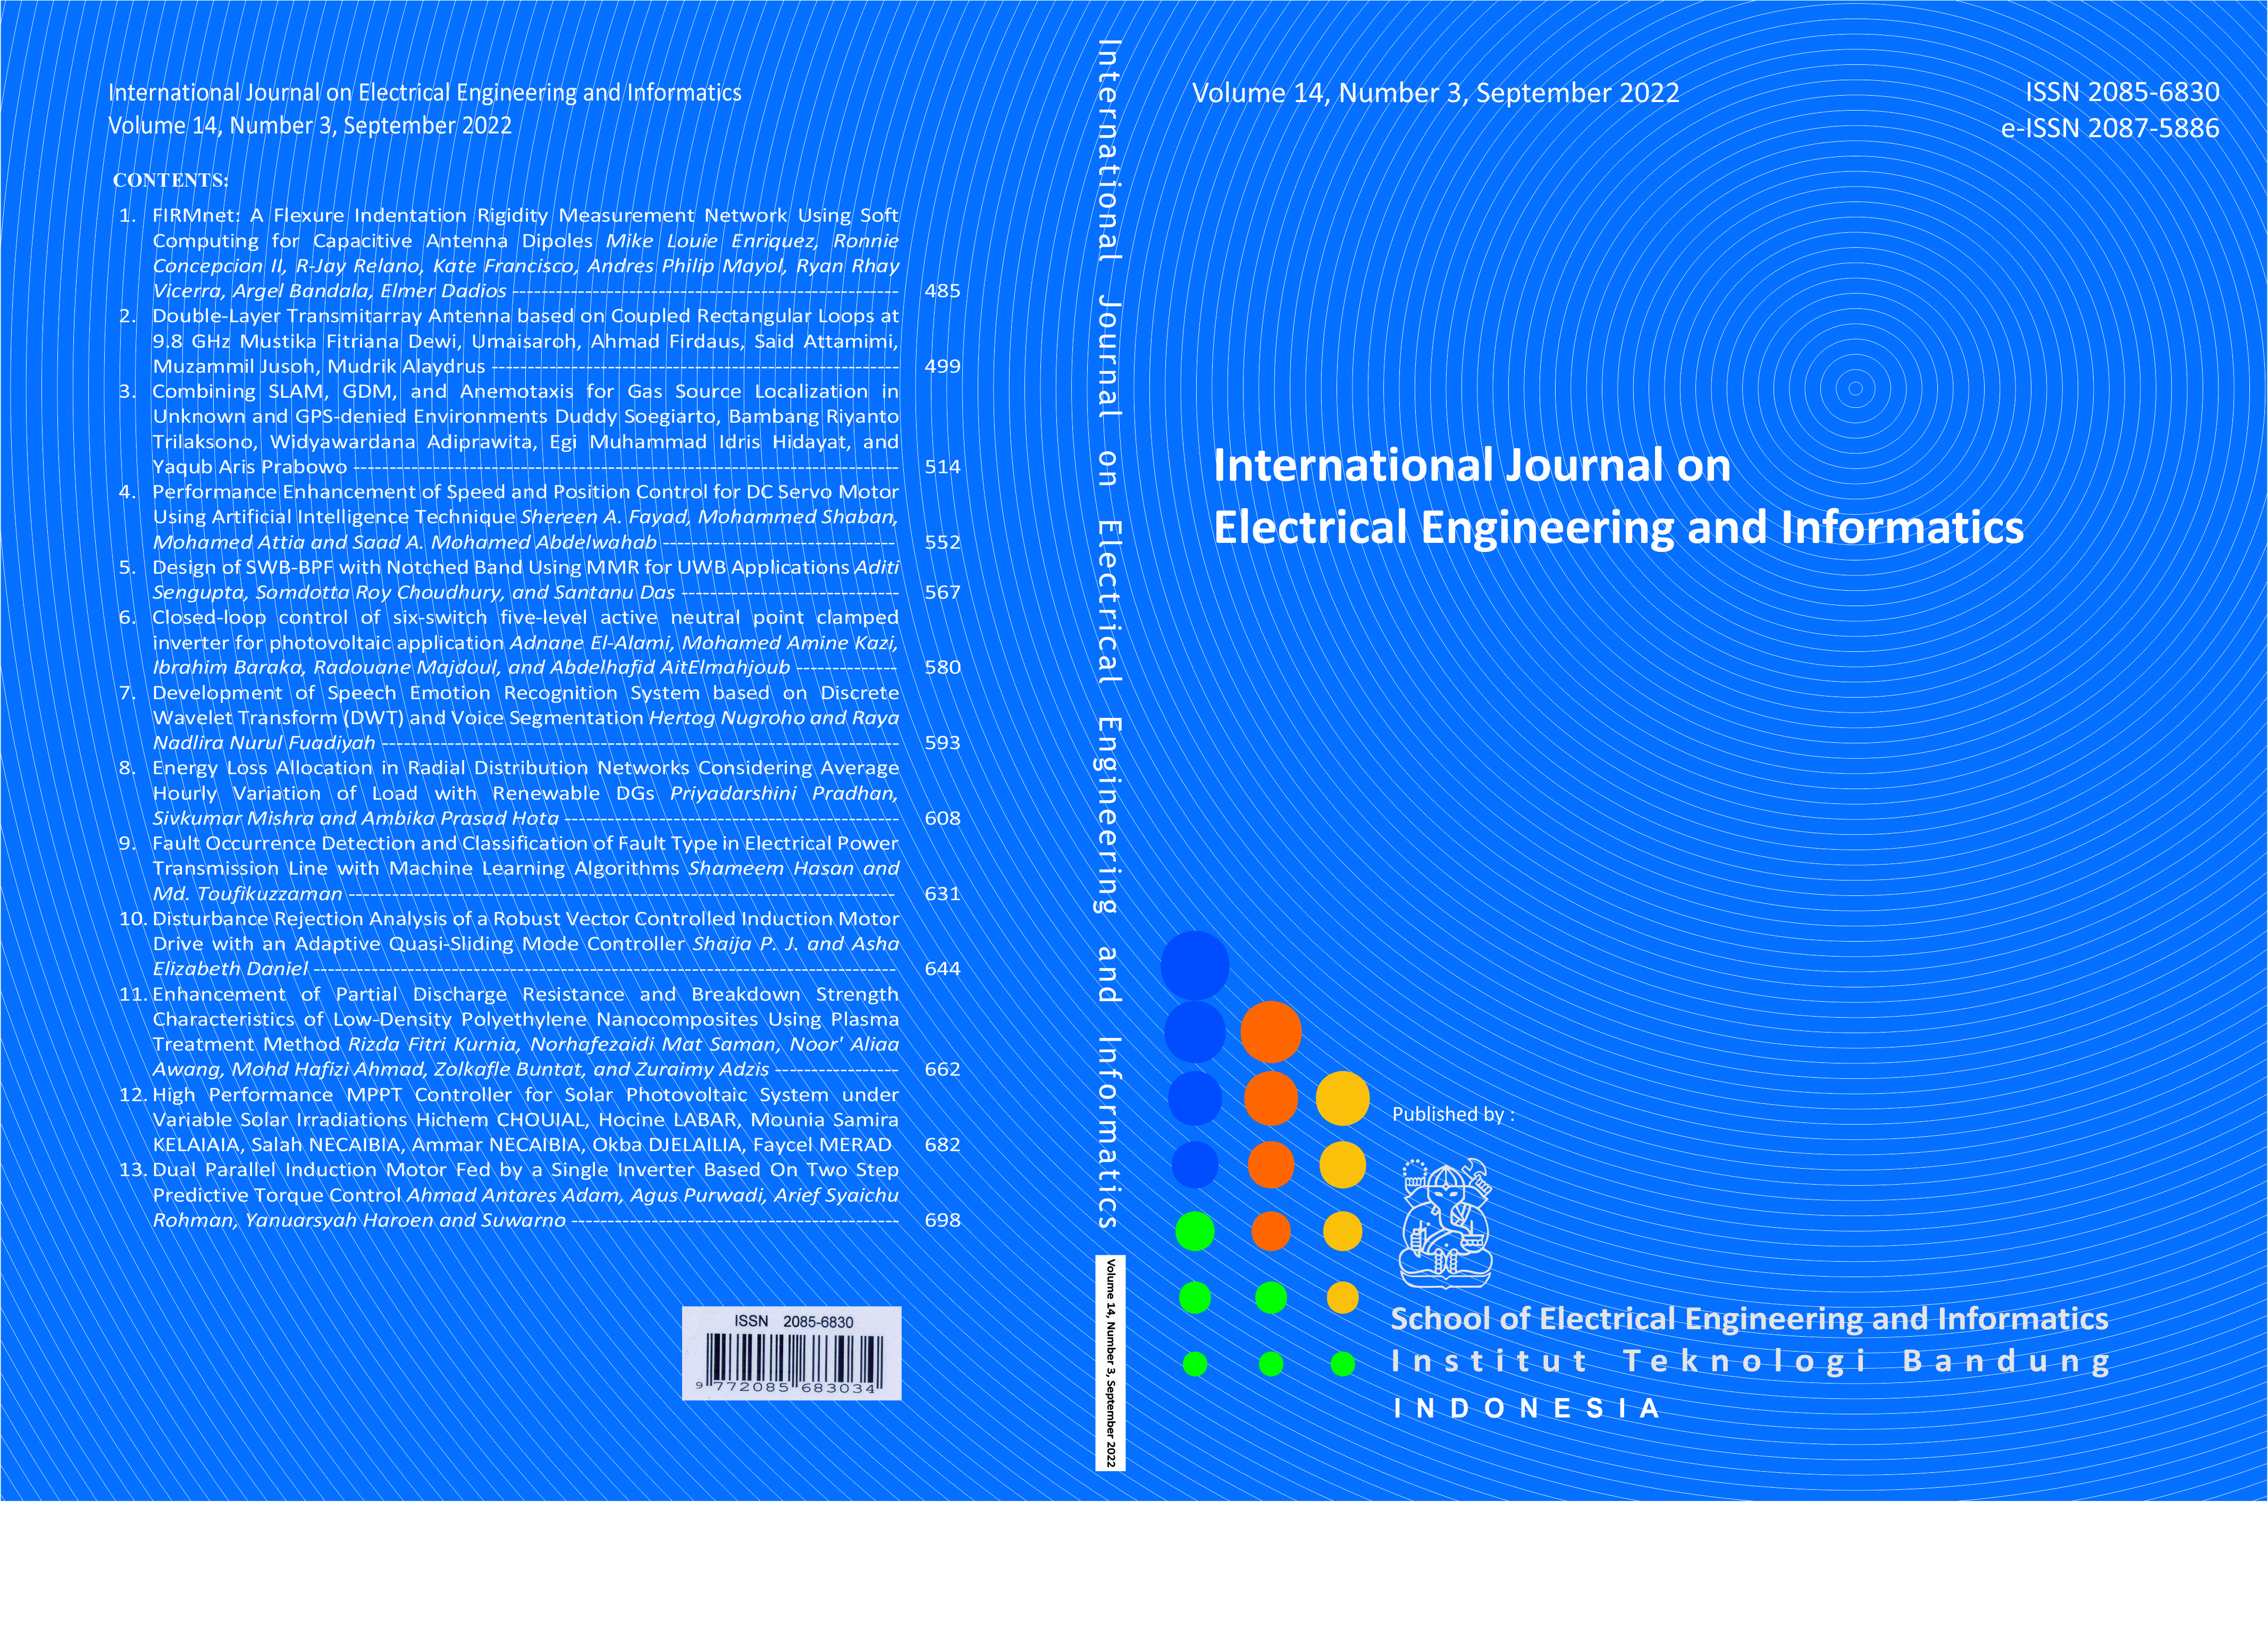 Journal cover Vol. 14 No. 3 September 2022